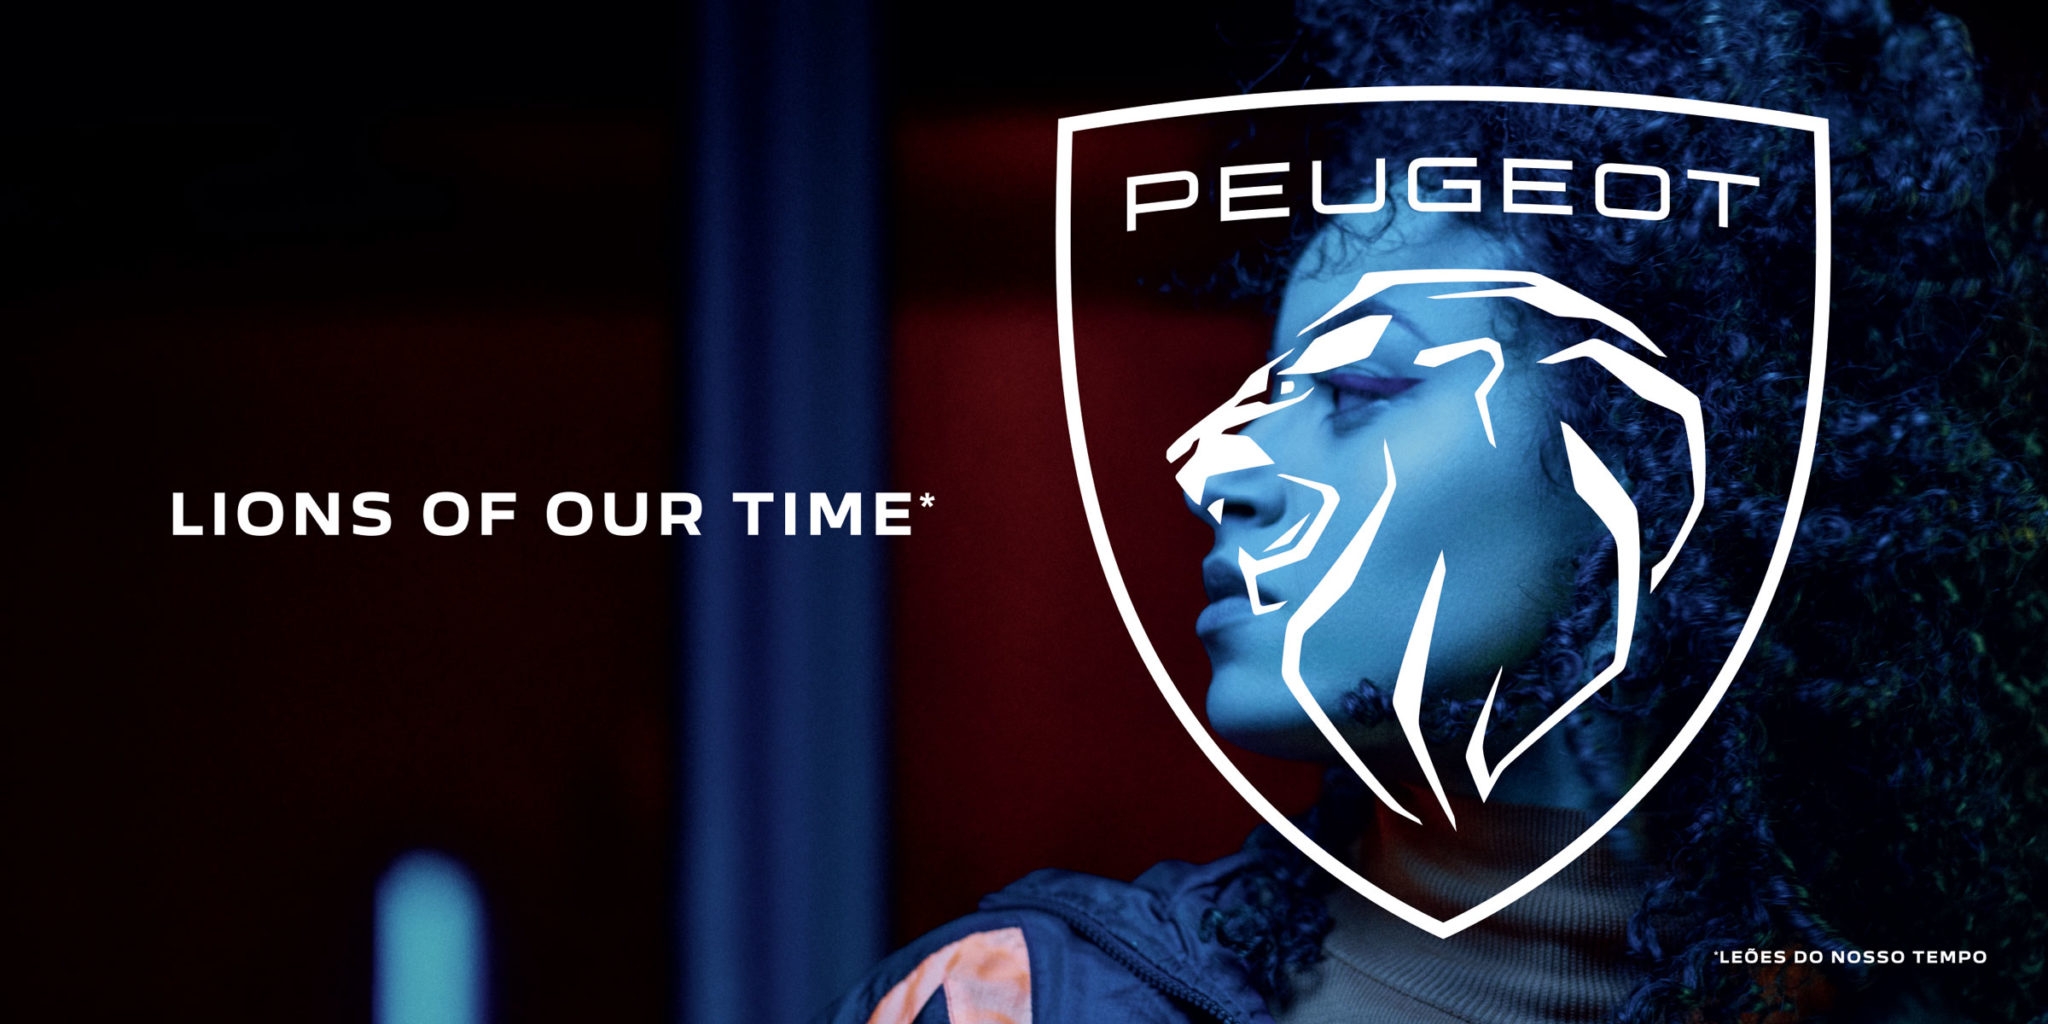 15 influenciadores com nova identidade Peugeot - Meios & Publicidade